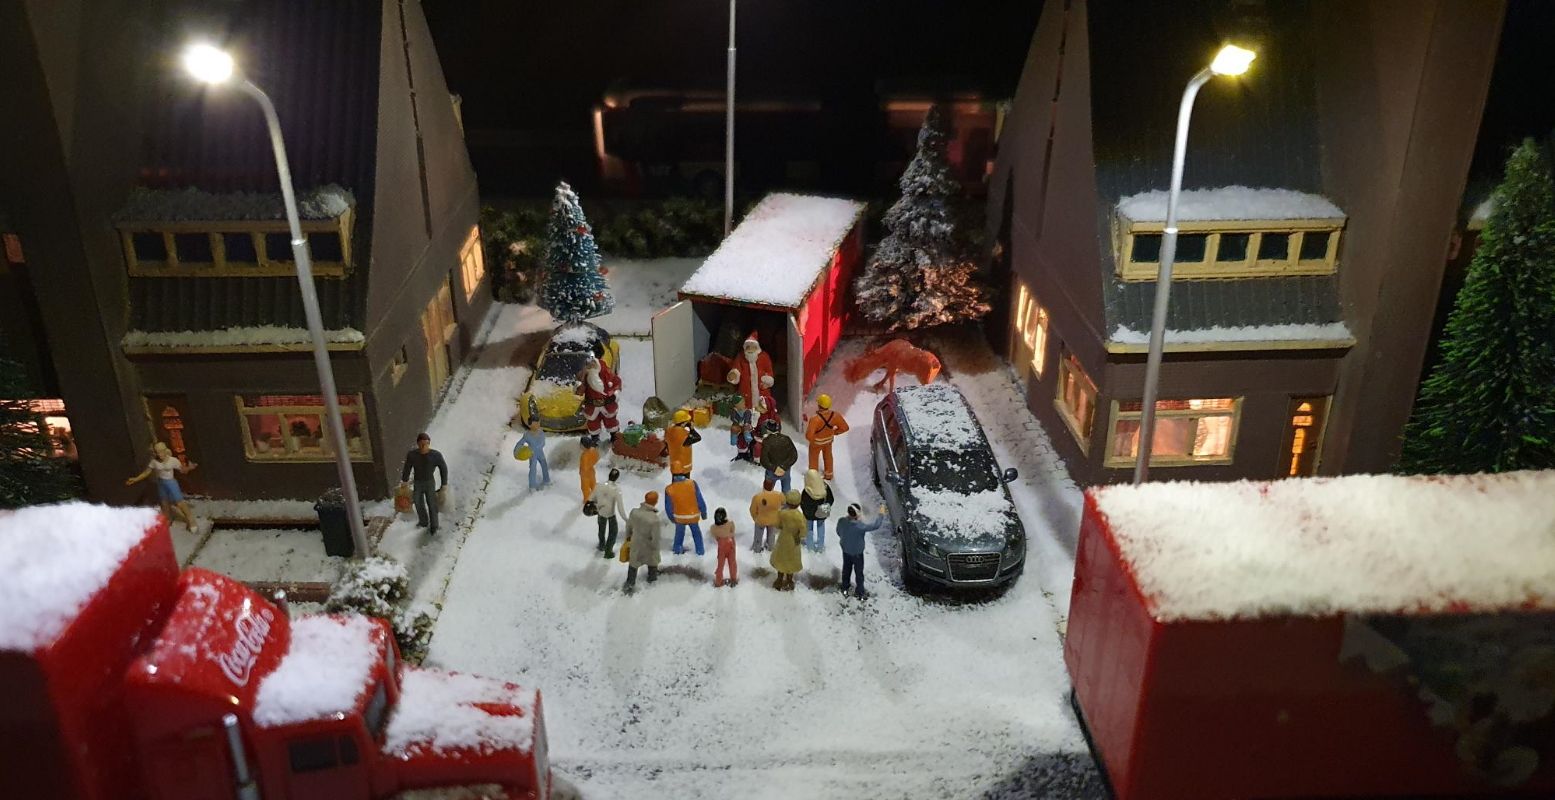 Spot alle kerstmannetjes in de winterse miniatuurwereld. Foto: Miniworld Rotterdam